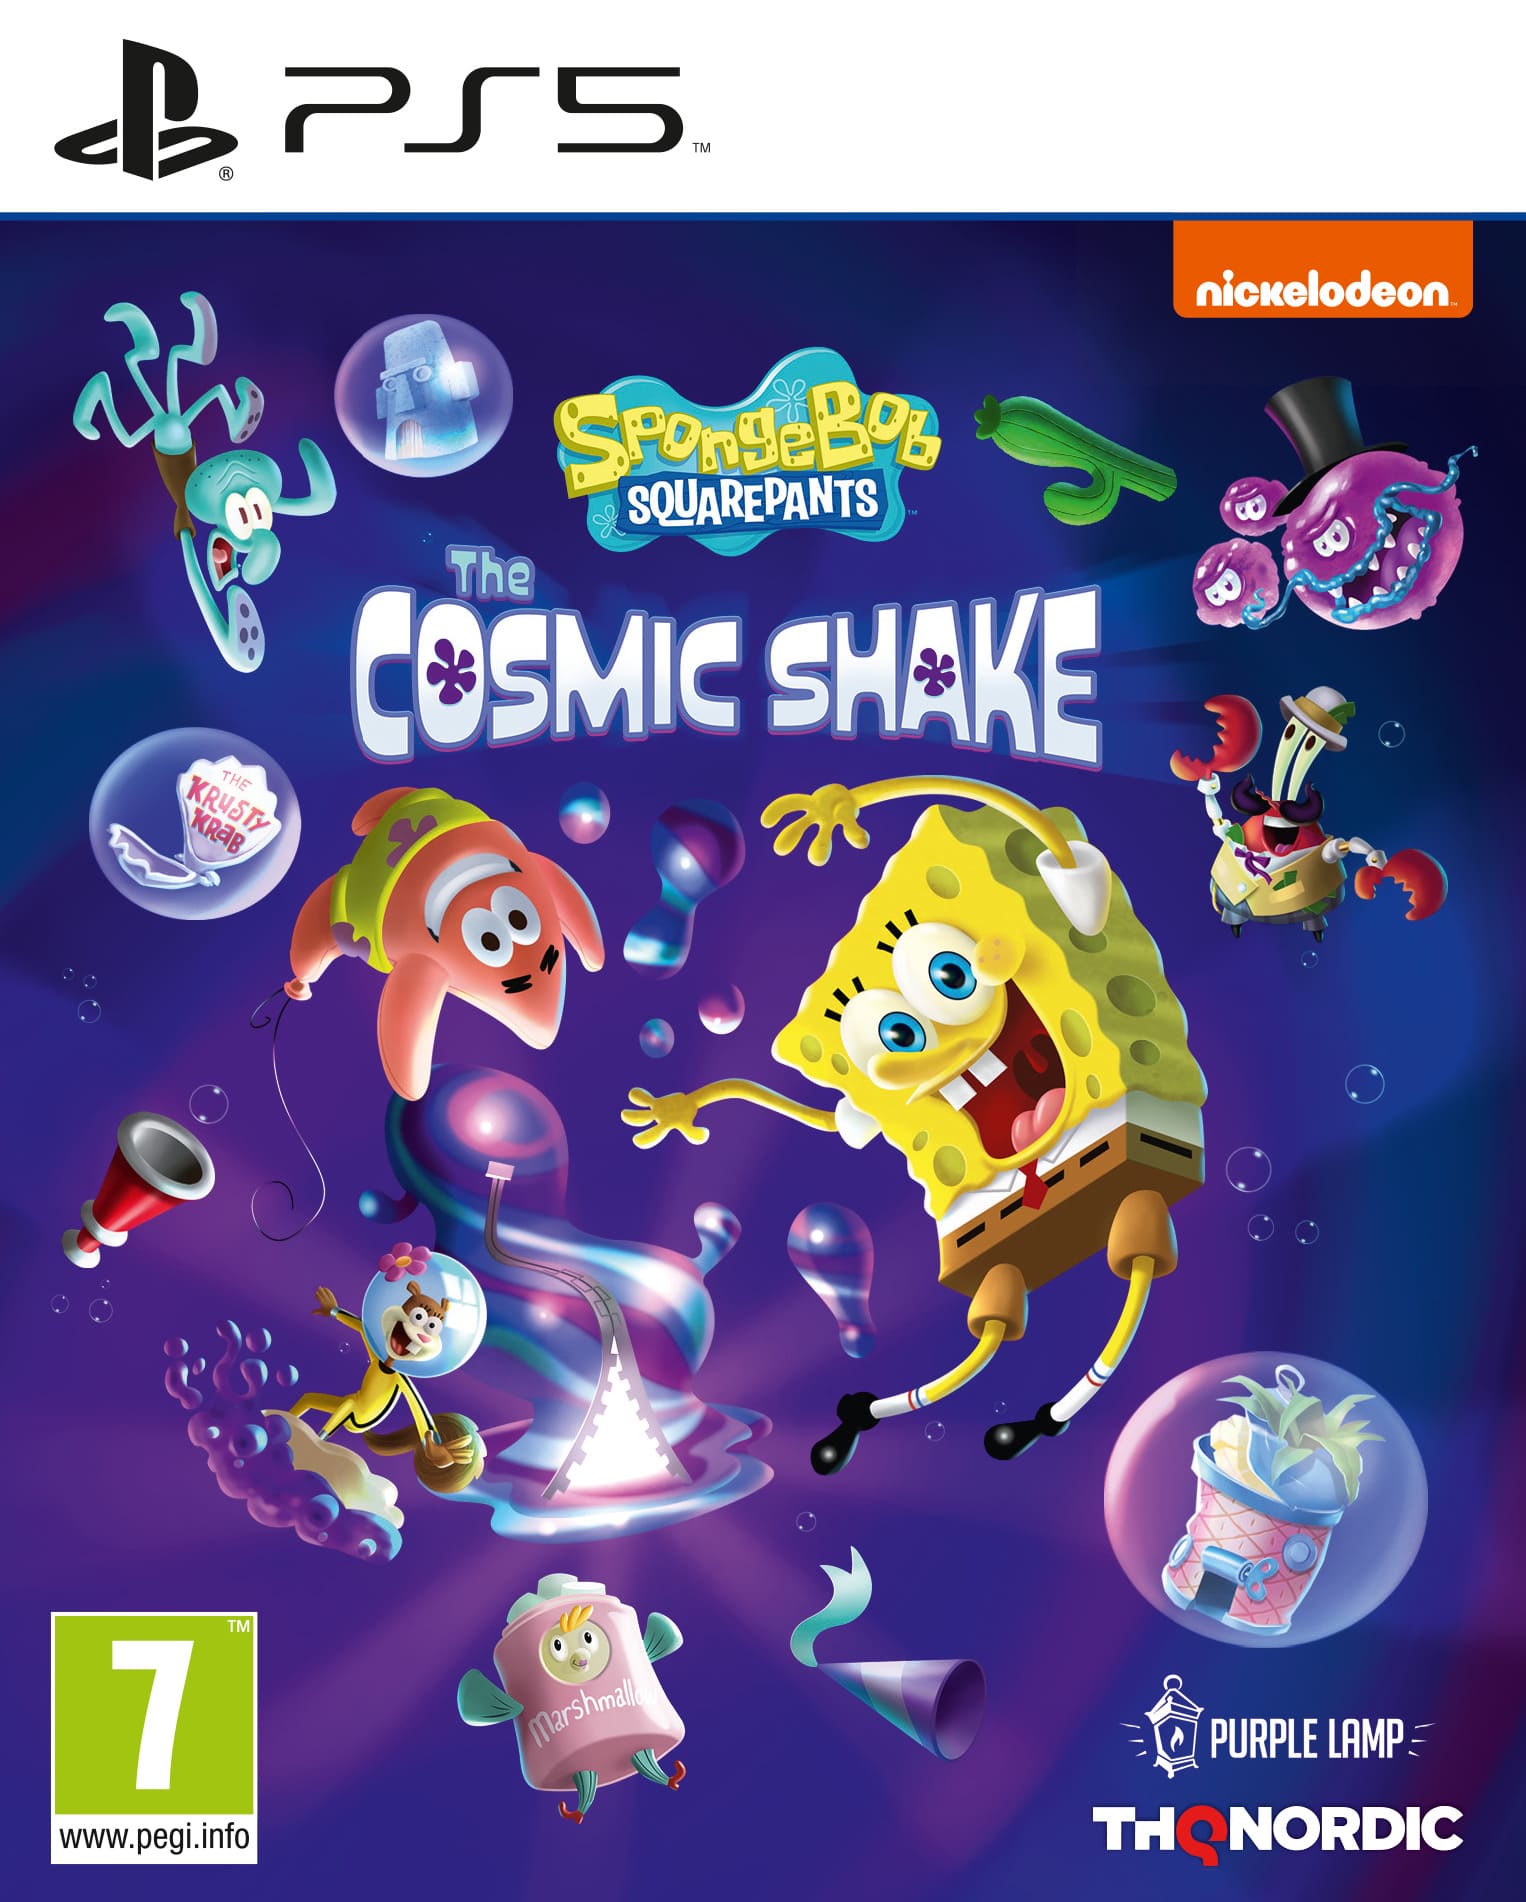 PS5 - SpongeBob SquarePants Cosmic Shake